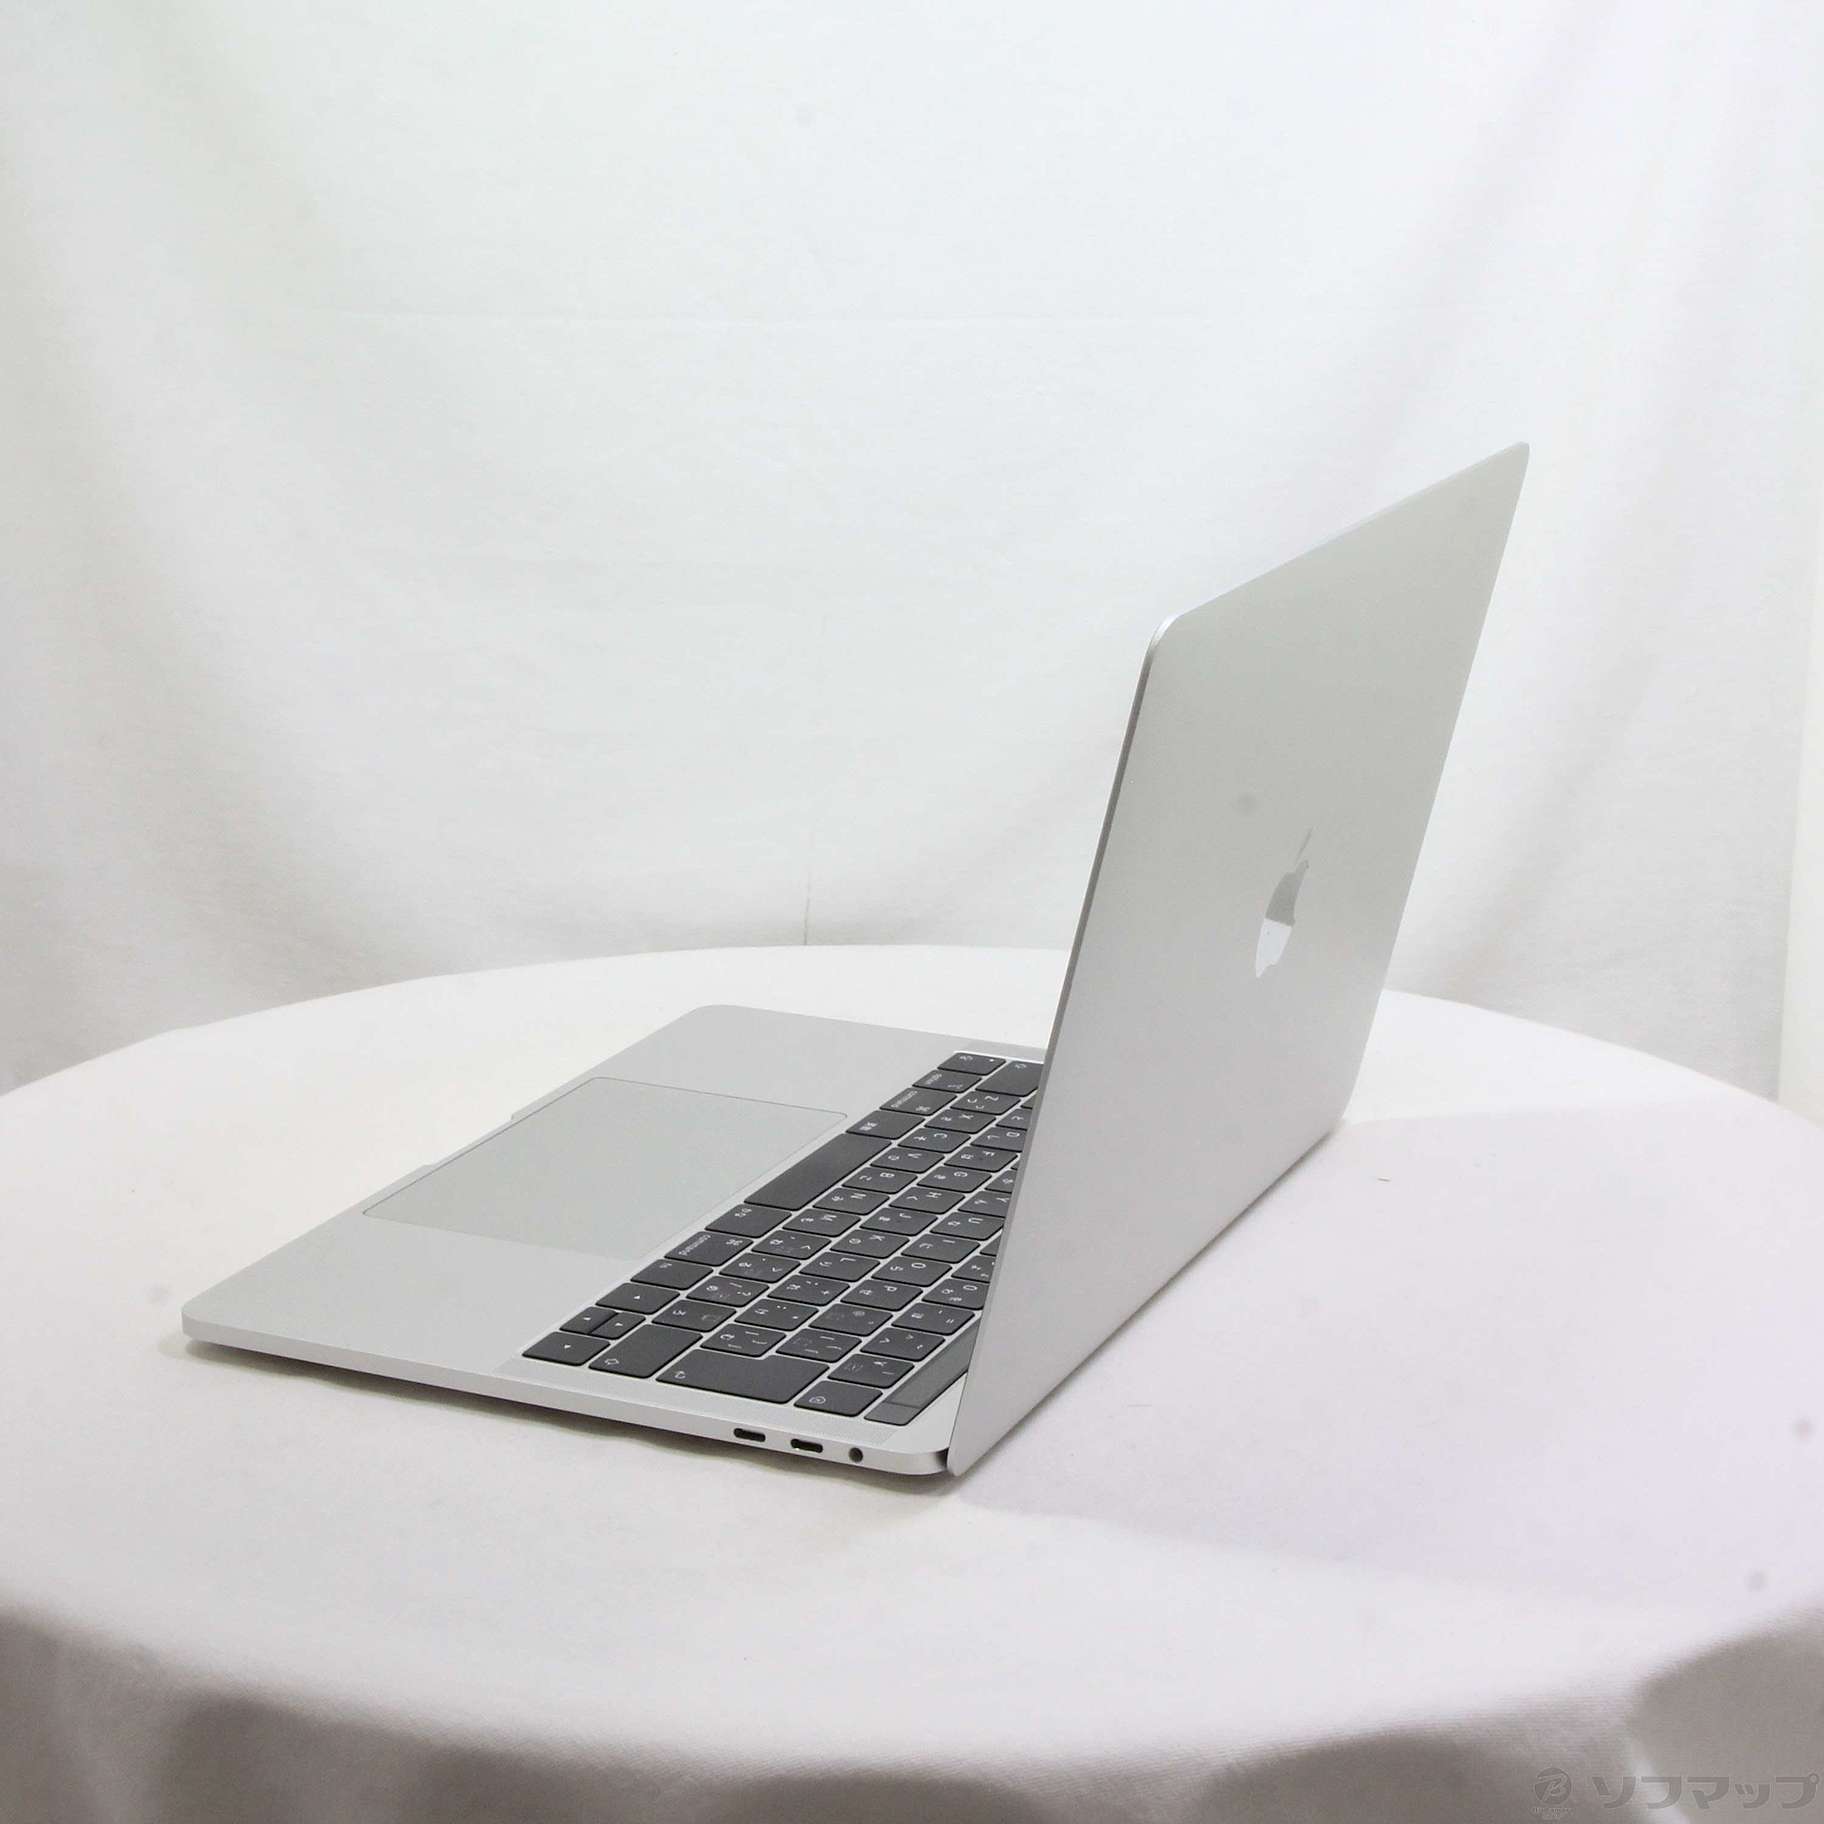 MacBook Pro シルバー 2019年モデル MV992J/A www.krzysztofbialy.com